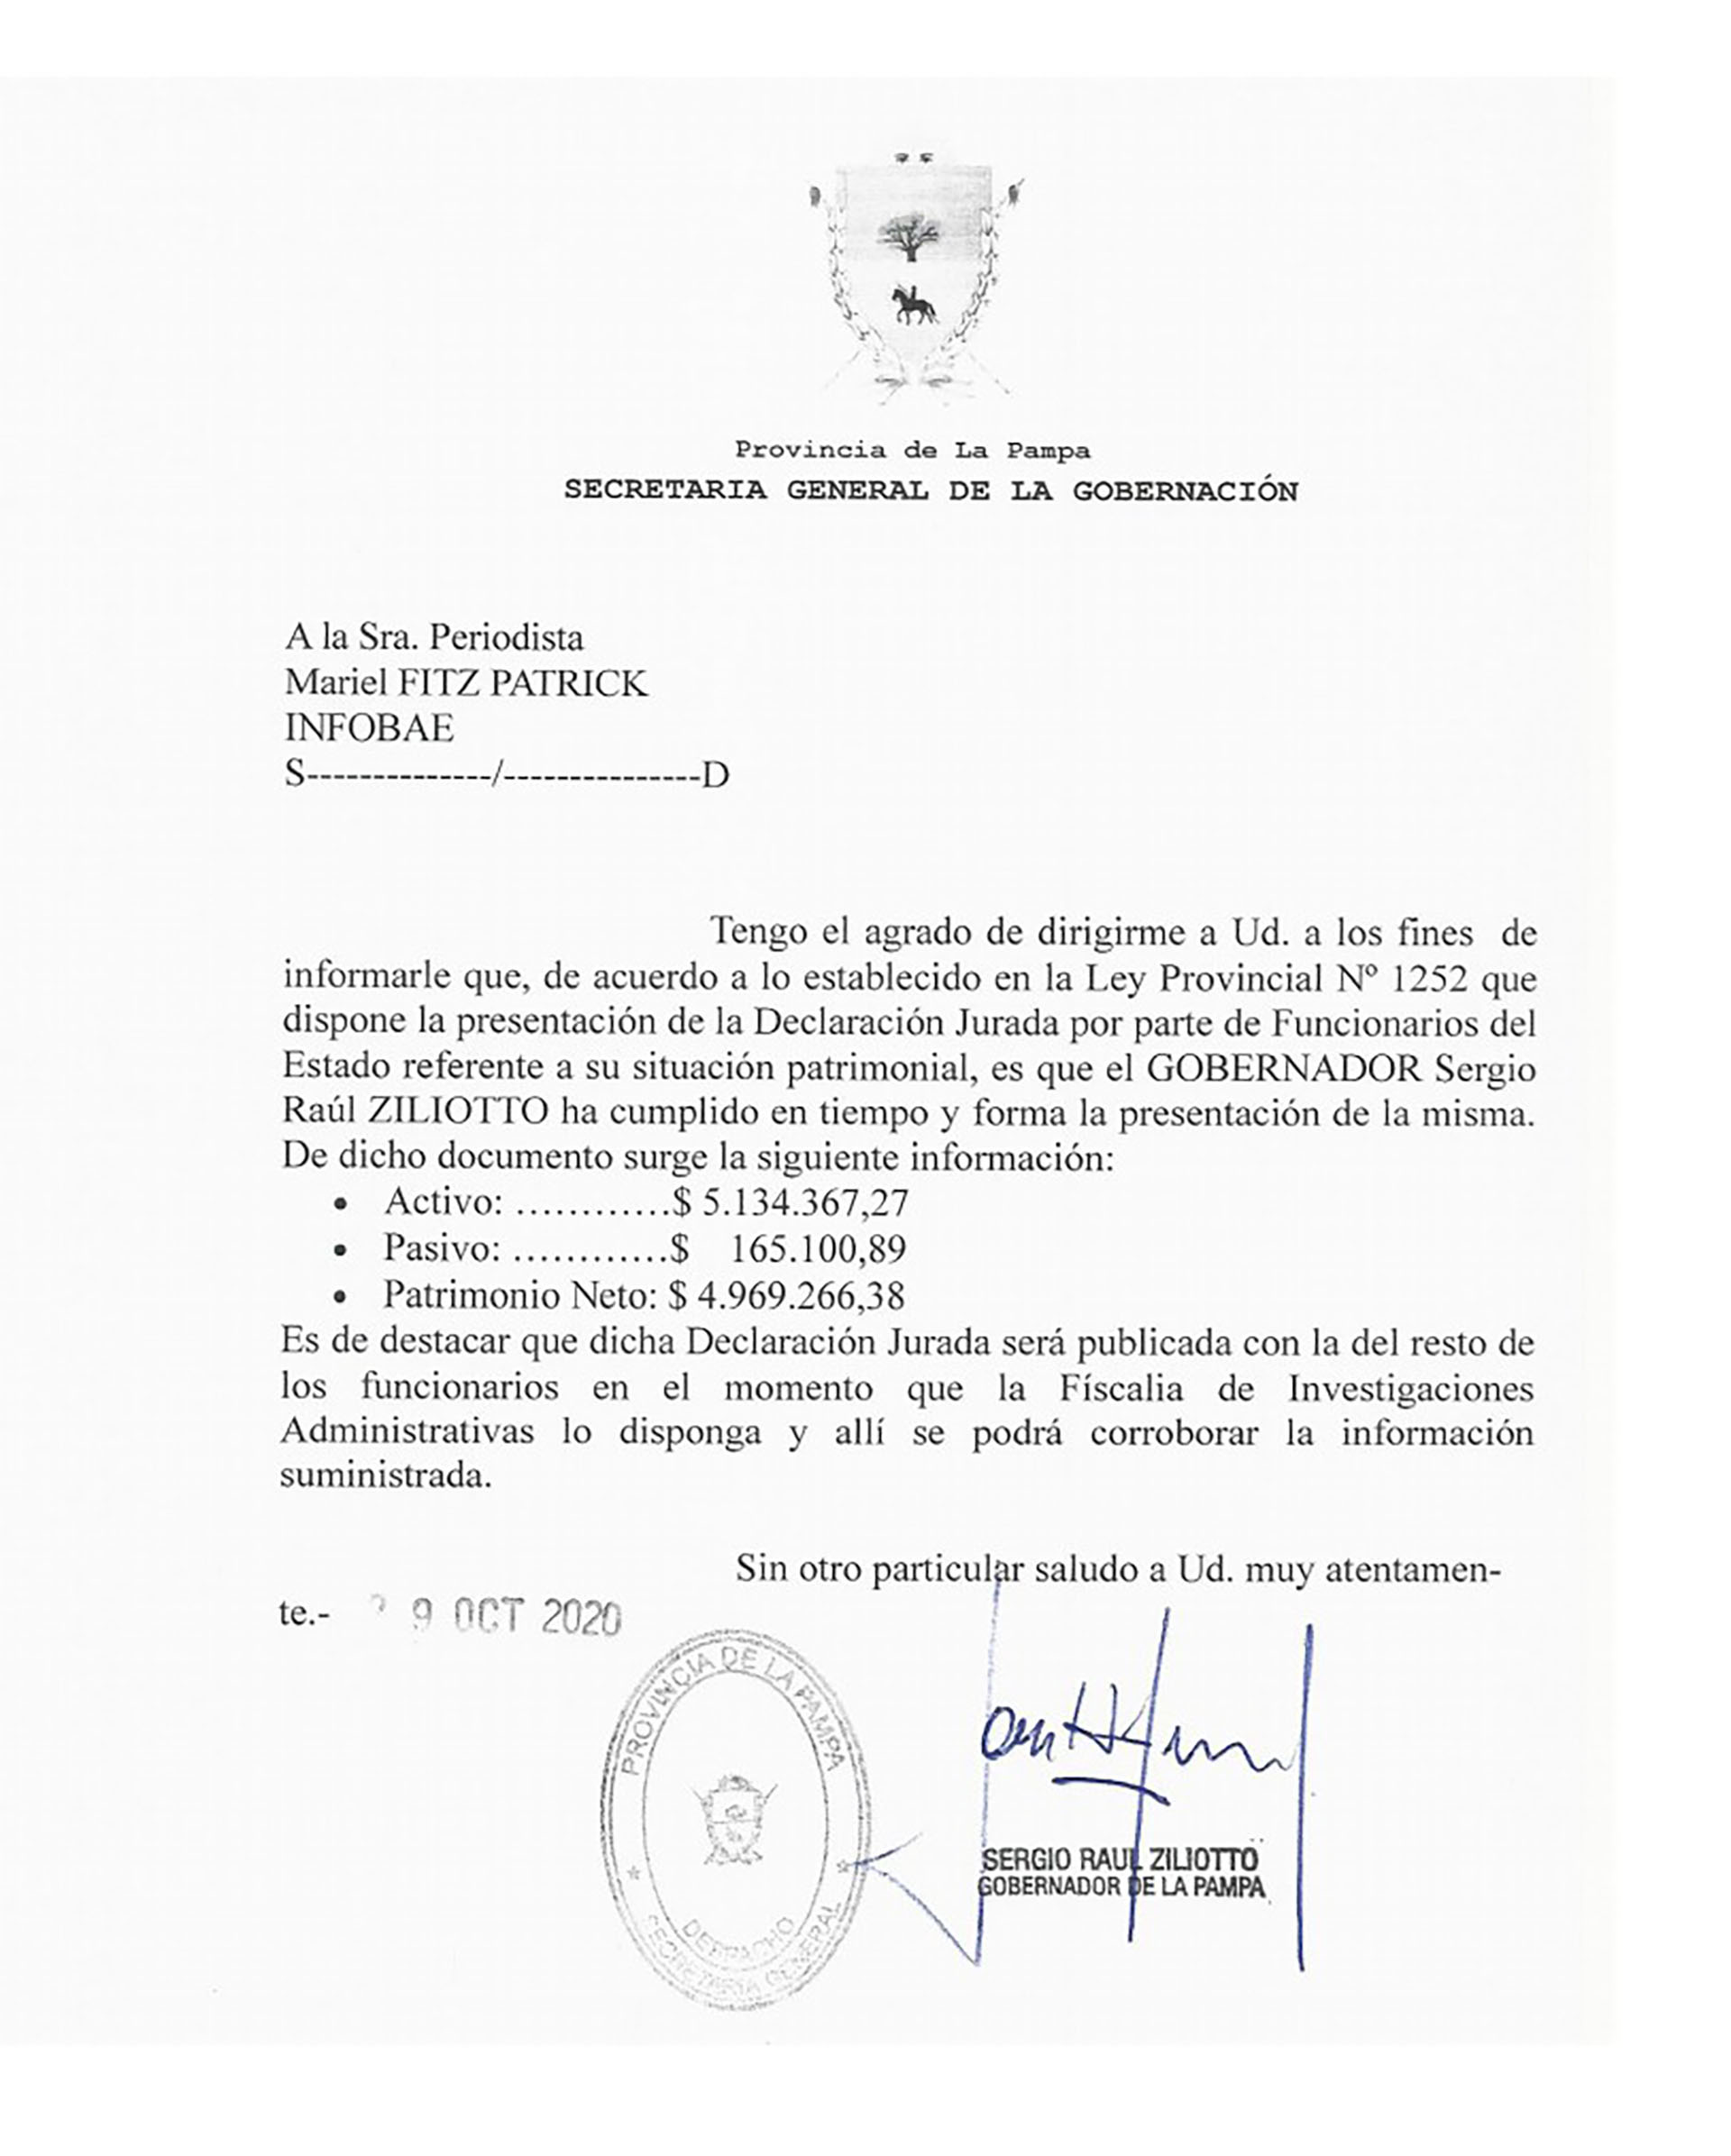 La nota enviada por el gobernador Zillioto a Infobae con el monto de sus activos y patrimonio neto.